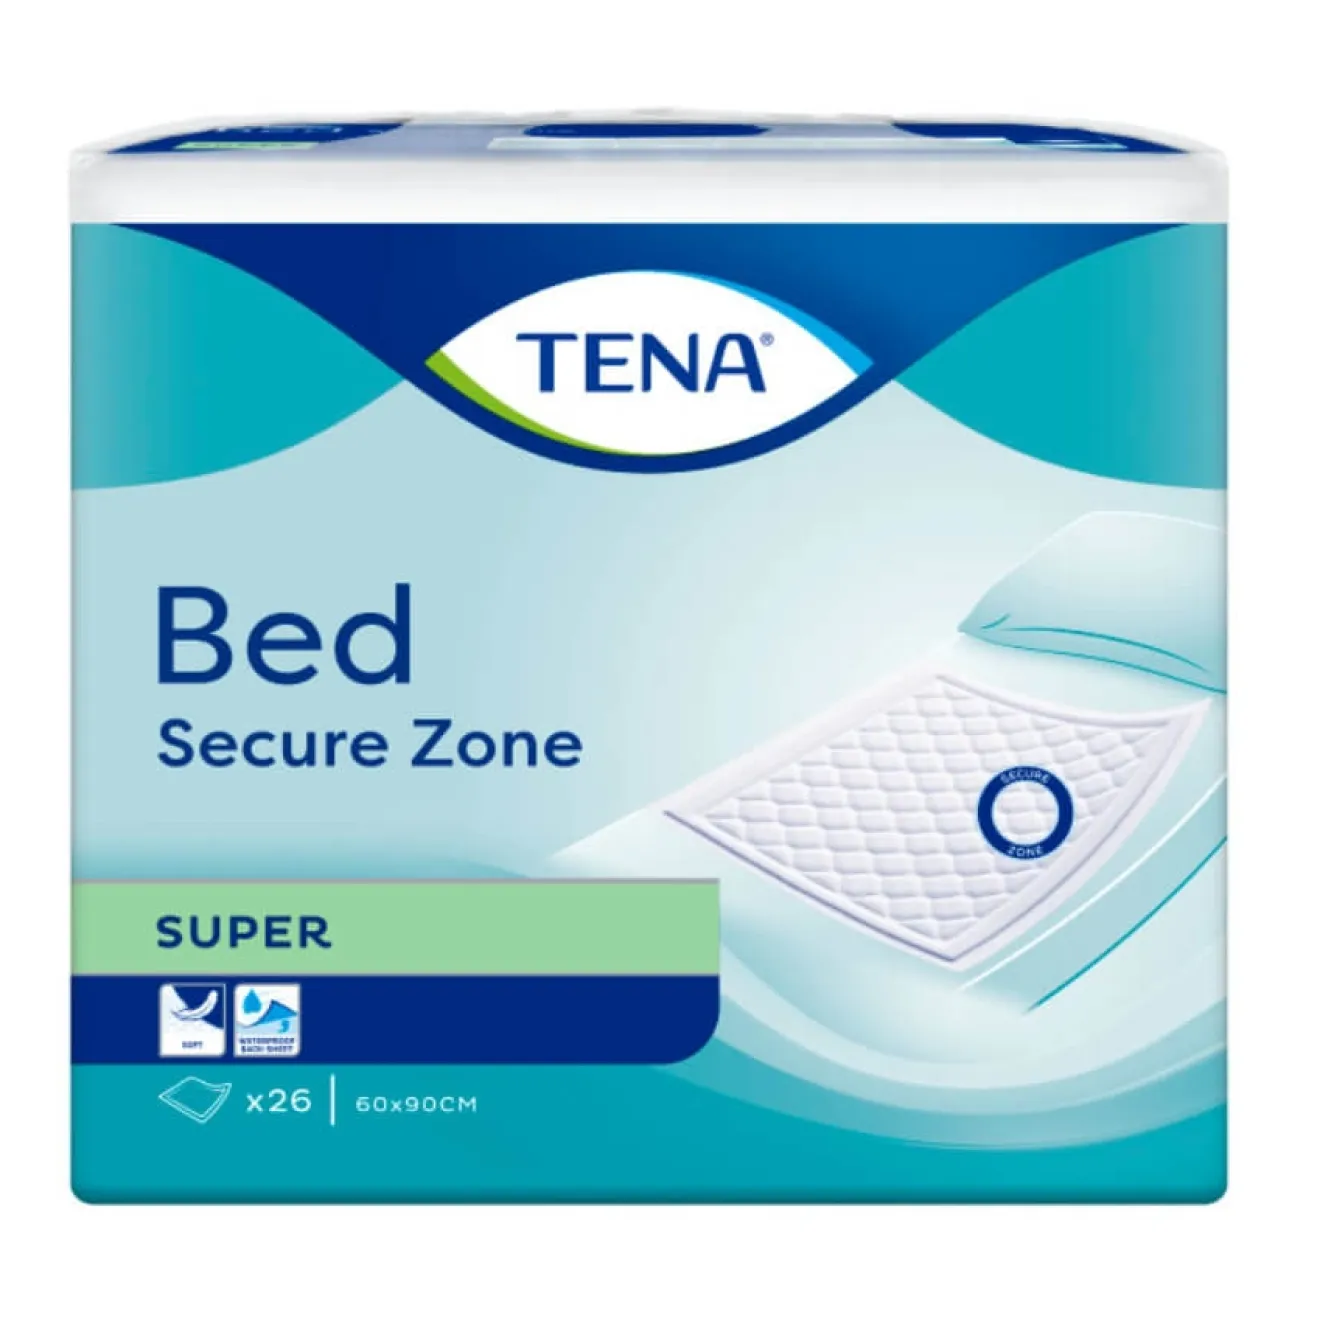 TENA Bed SUPER 60x90cm 3x26 ST